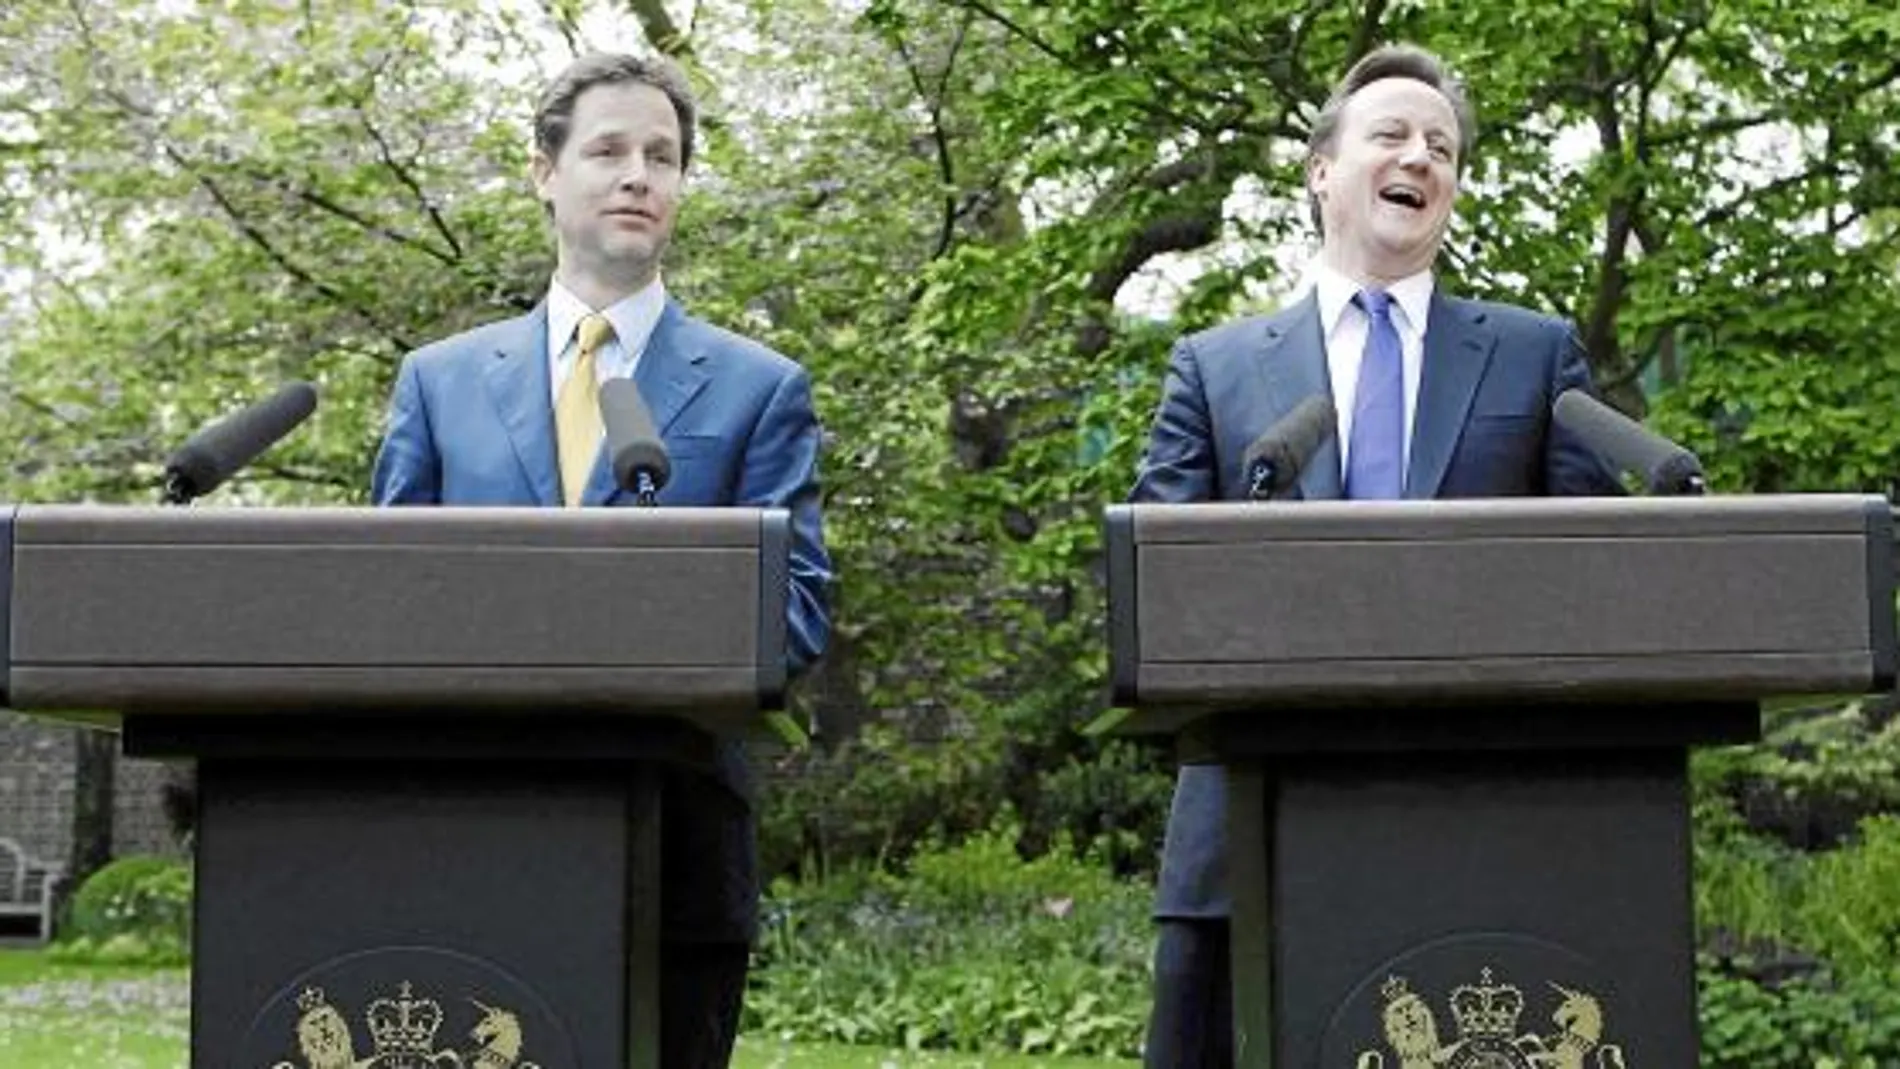 El viceprimer ministro (izq) y el primer ministro (derecha) protagonizaron una rueda de prensa distendida en la que se permitieron algunas bromas mutuas